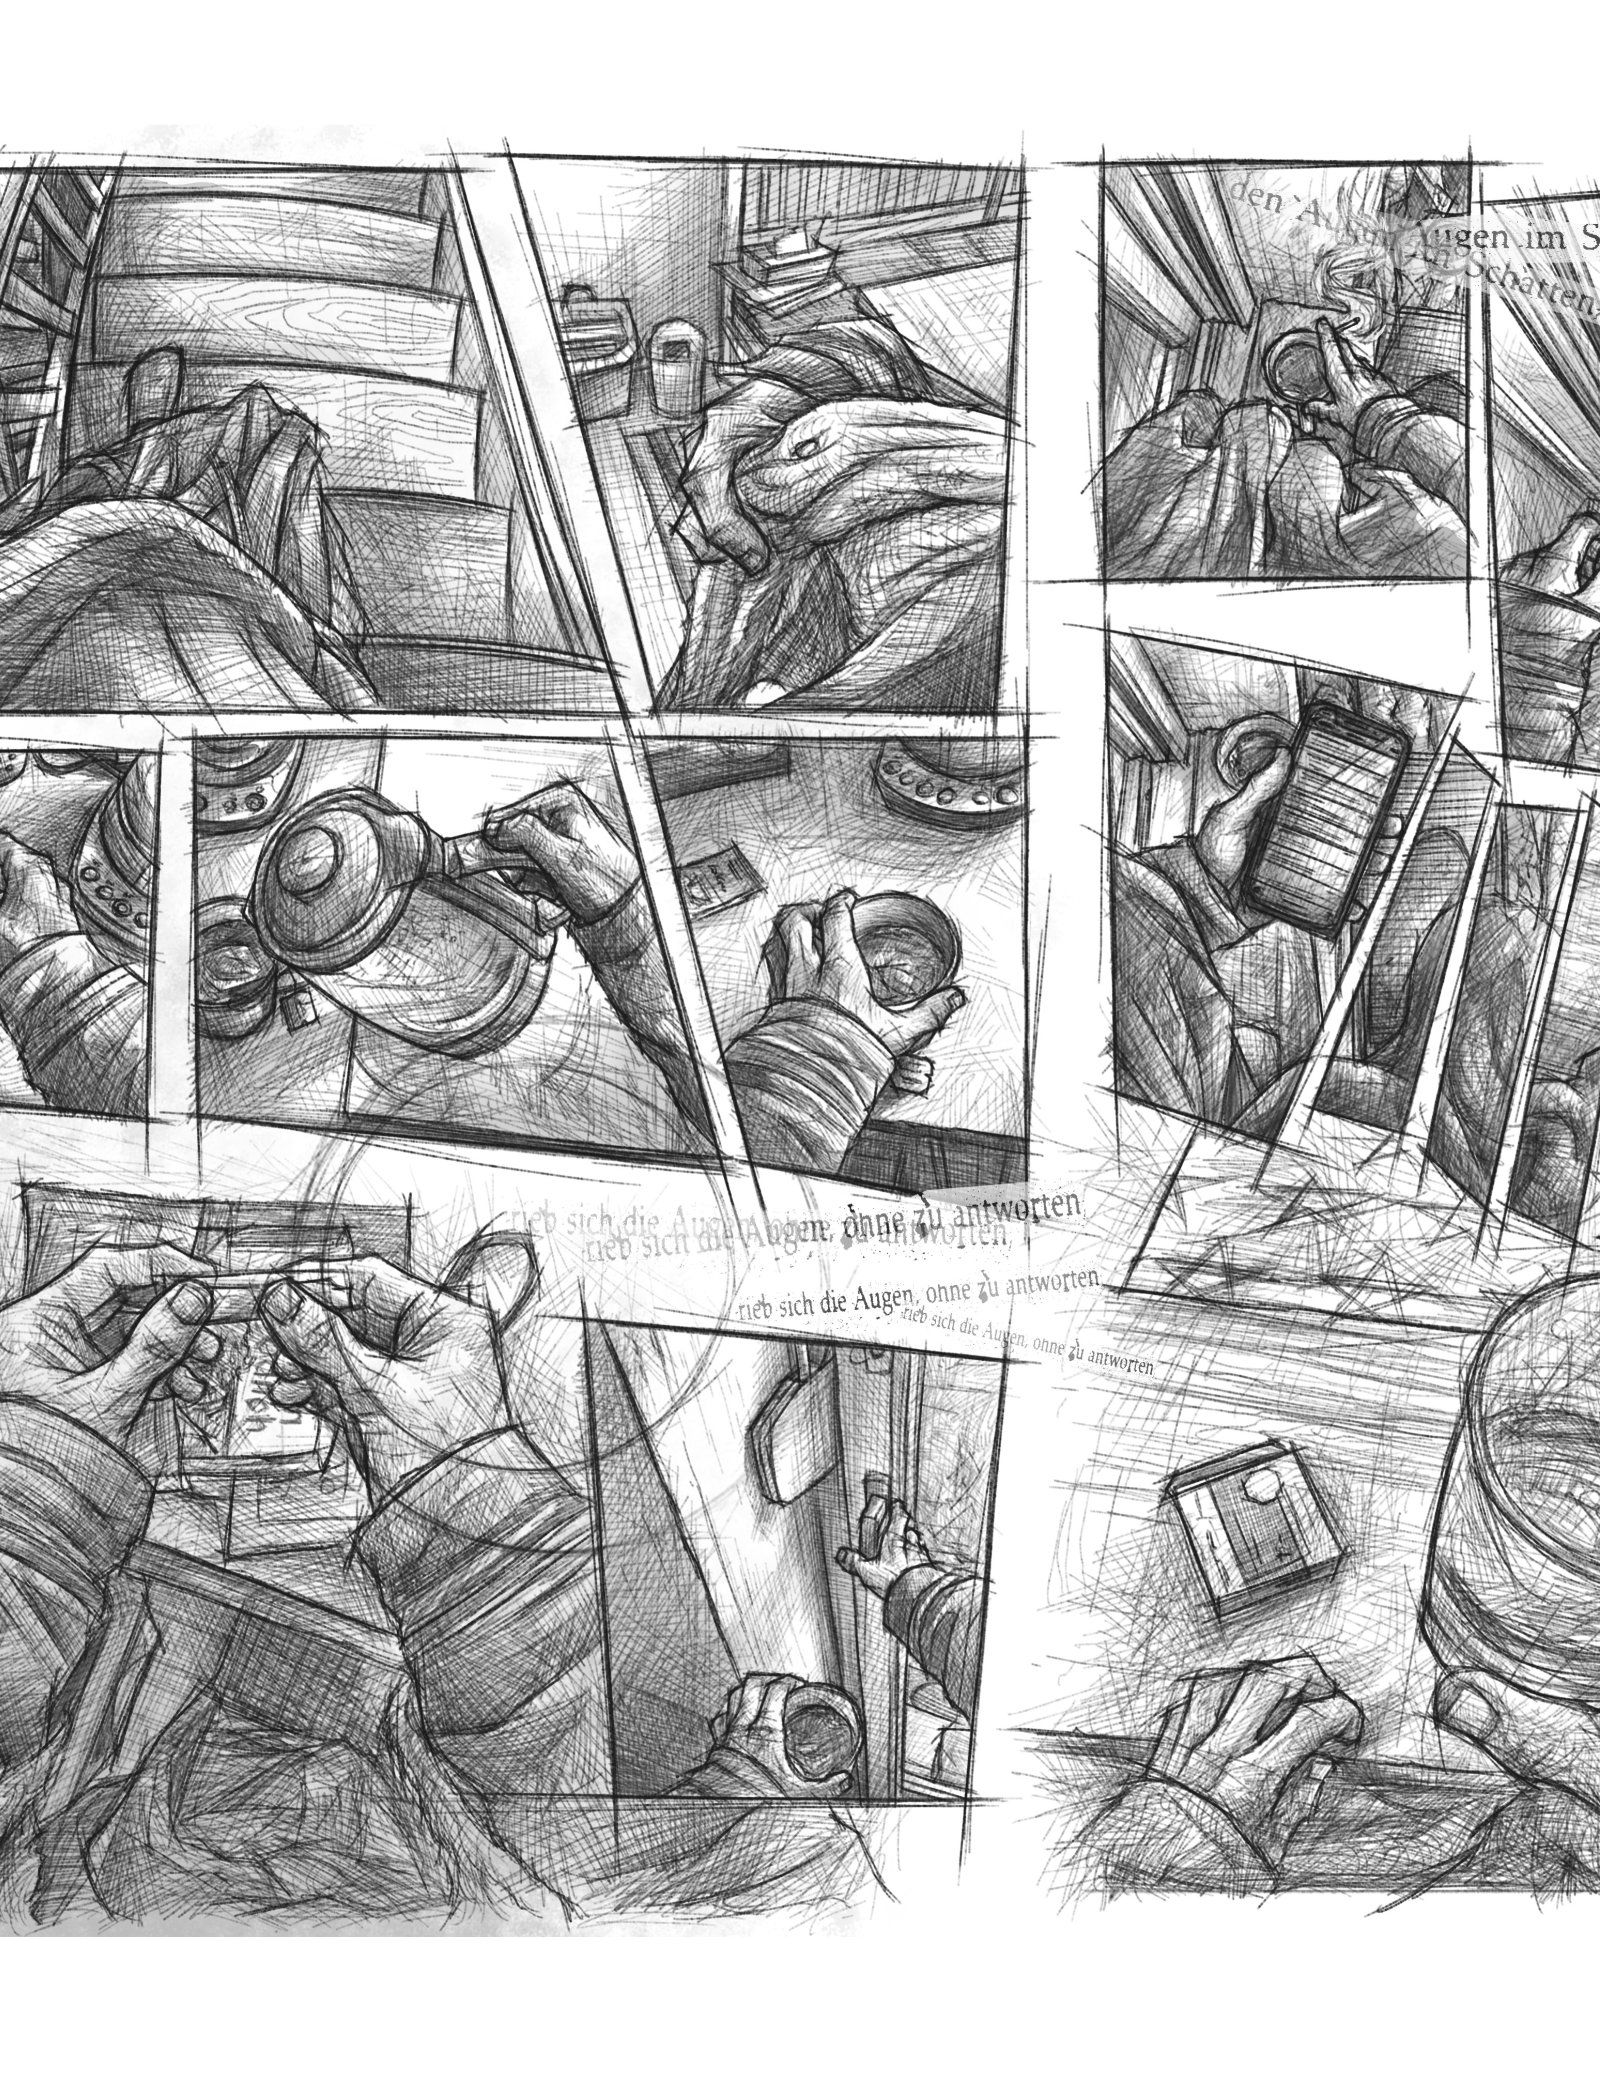 Eine Comic Seite auf der man im Skizzenstil gezeichnete Panels sieht, die aus der Egoperspektive zeigen, wie eine Person morgens die Treppe herunter läuft und sich eine Zigarette dreht